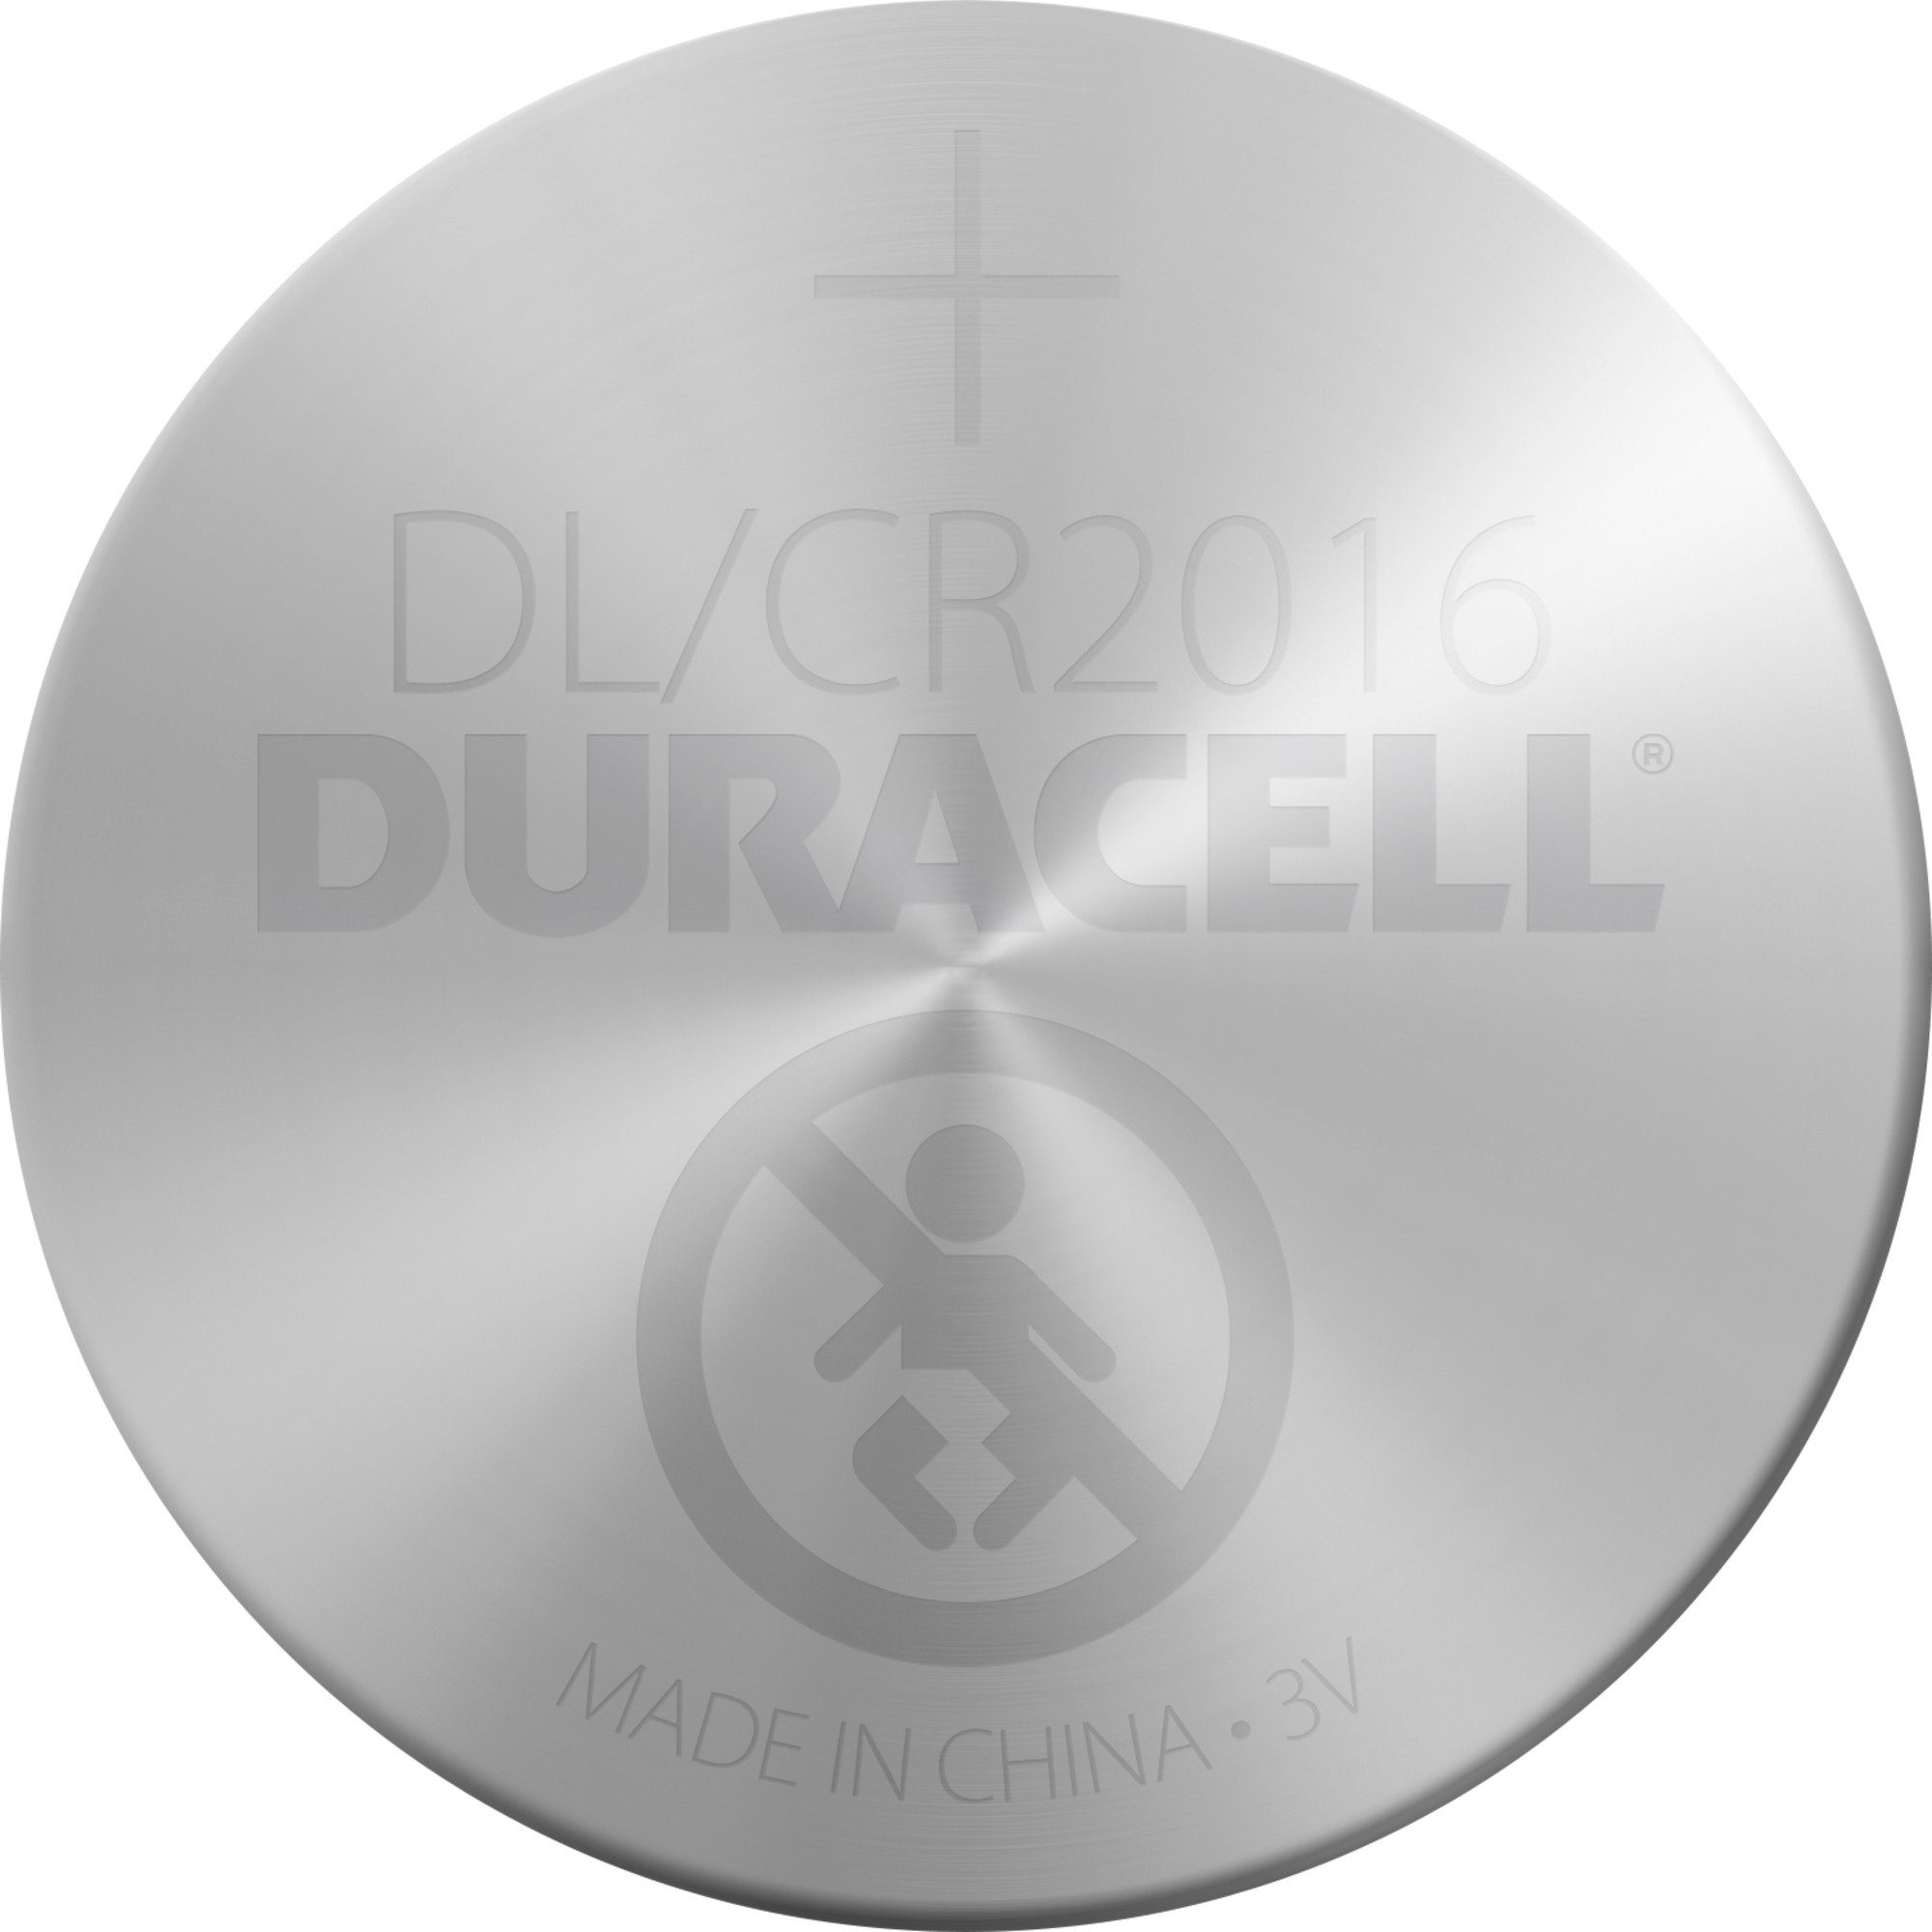 2016 3V, Batterie, Lithium-Knopfzelle CR Batterie Duracell Duracell